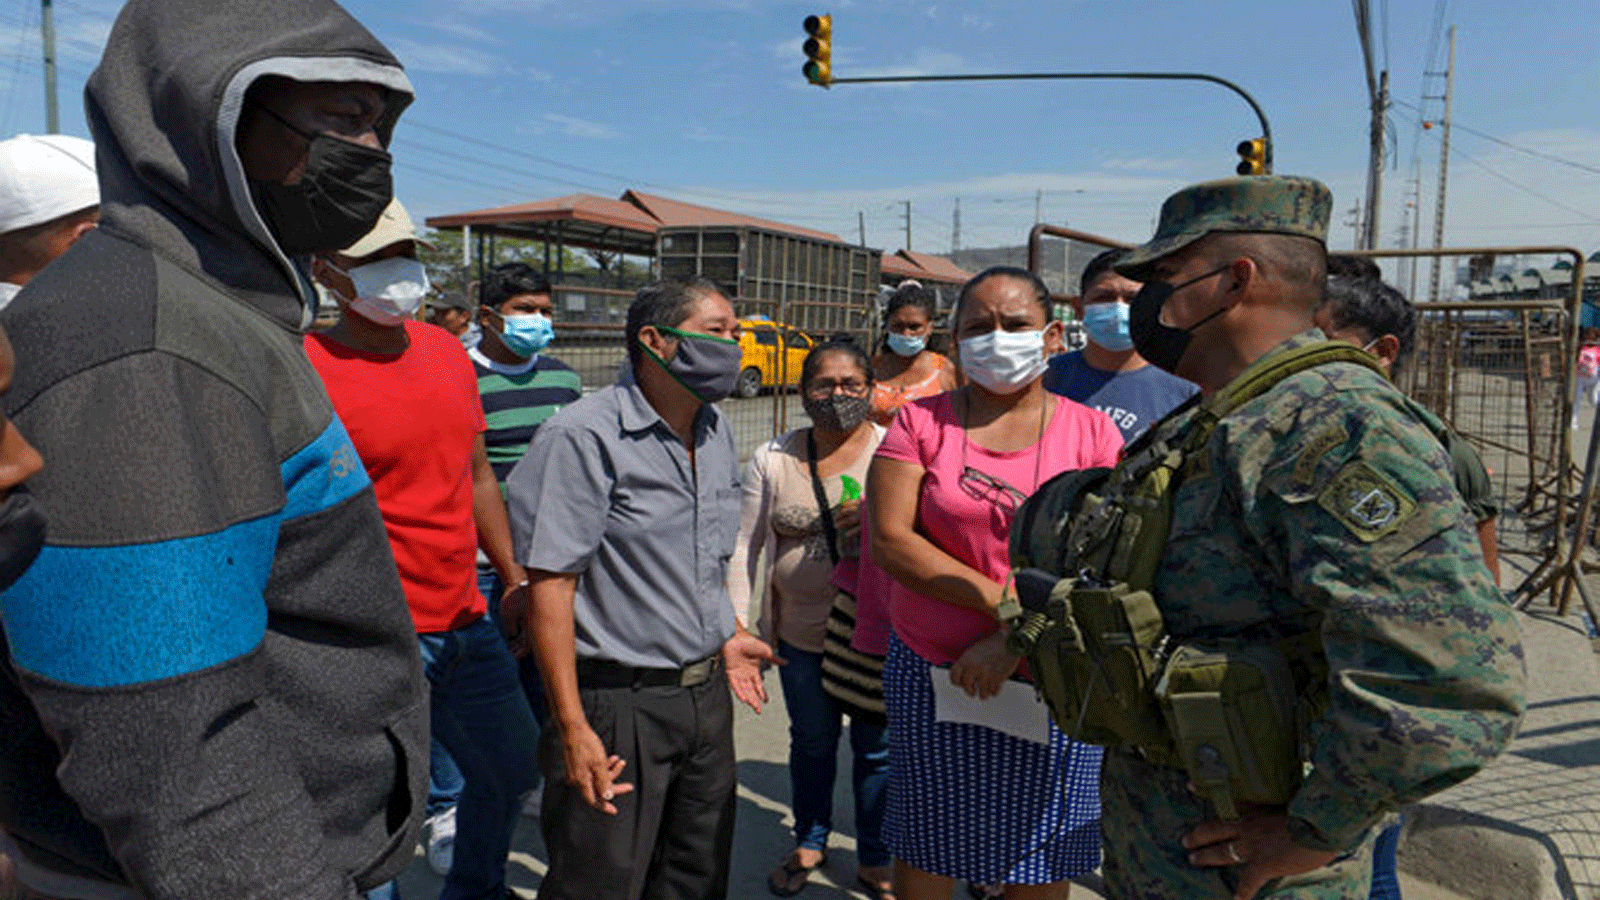  أقارب السجناء يتحدثون مع جندي أثناء انتظارهم للمعلومات خارج سجن في غواياكيل ، الإكوادور، في 29 أيلول\سبتمبر 2021، بعد وقوع أعمال شغب.